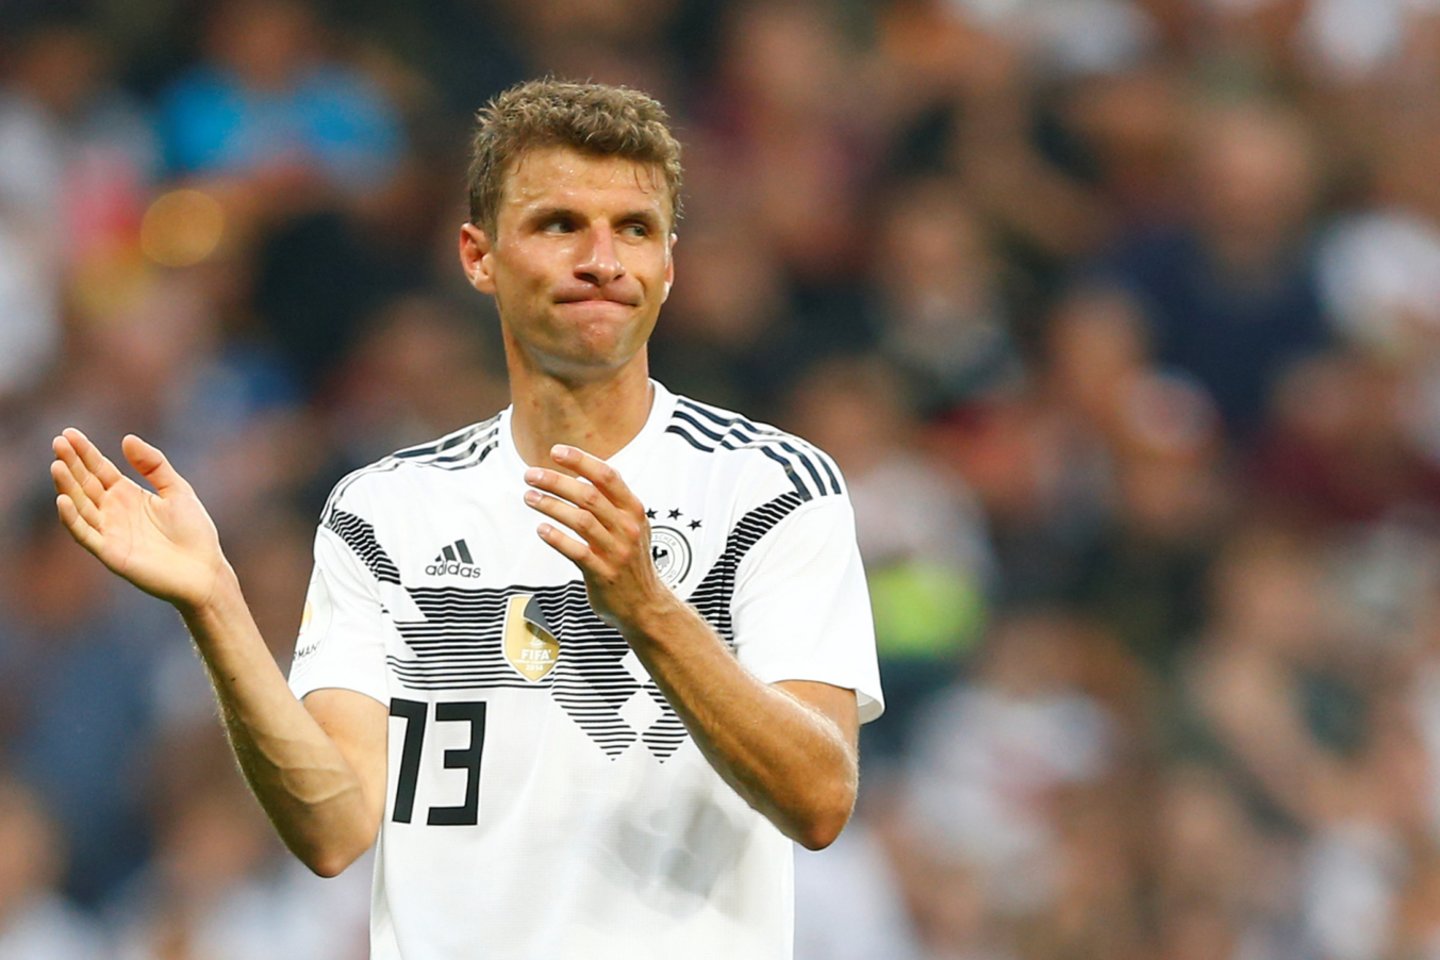  Vokietijos futbolo rinktinei prognozuojamas pasaulio čempionato finalas<br> Scanpix.com nuotr